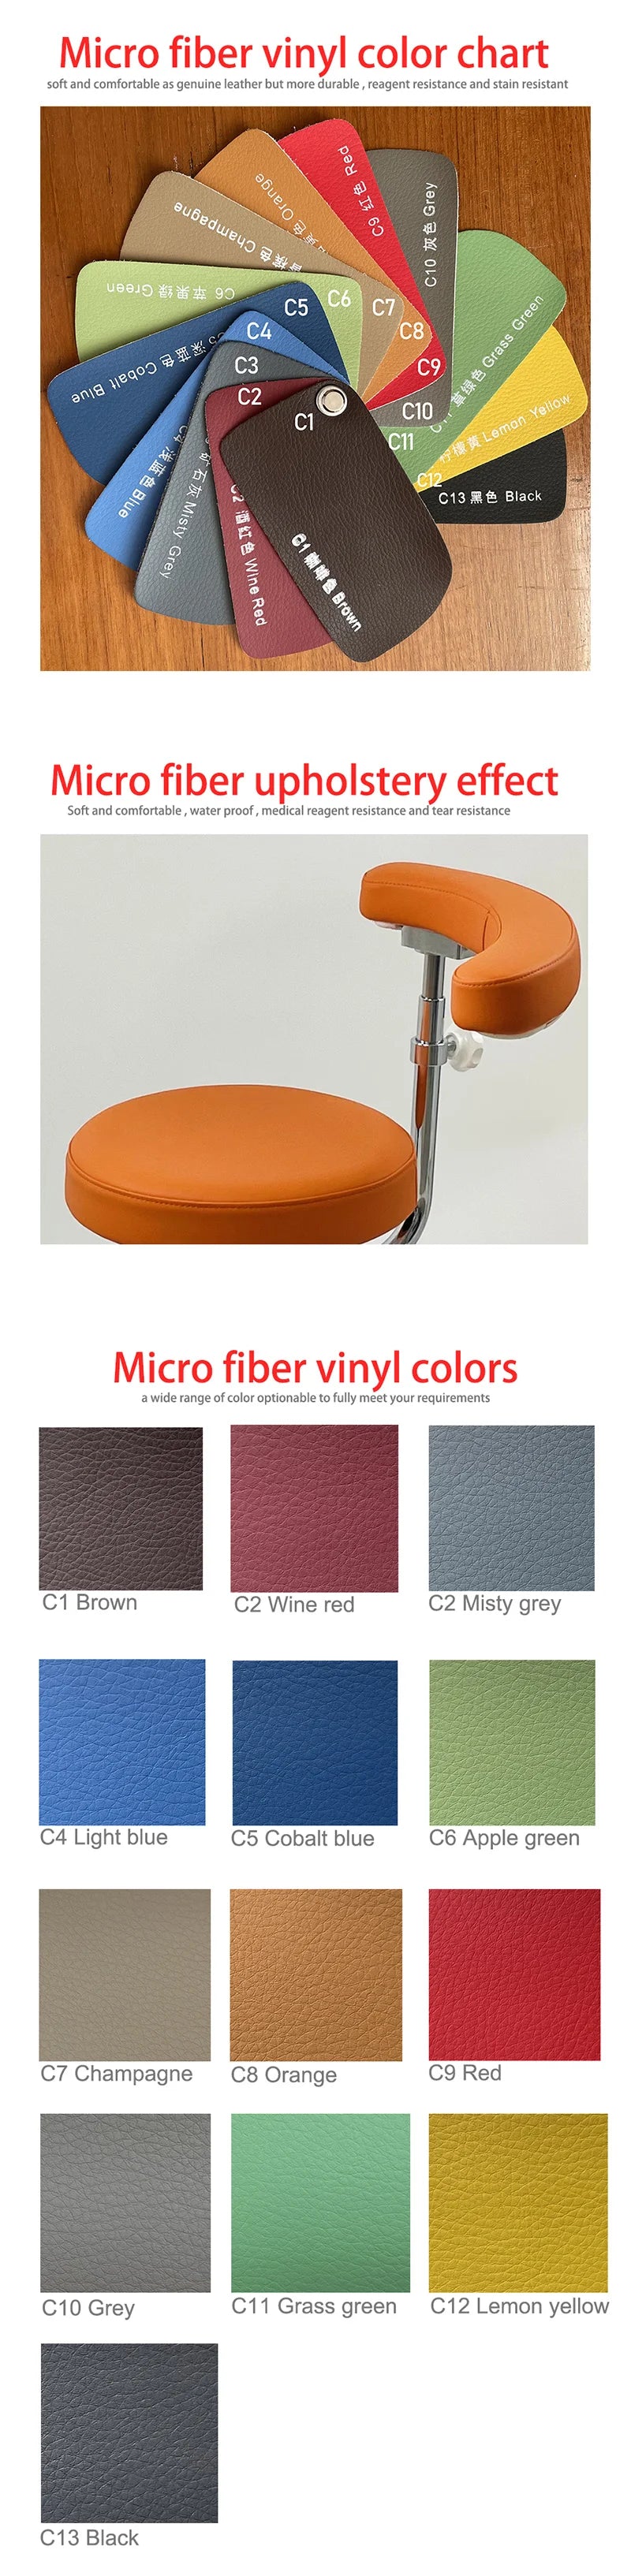 Micro fiber vinyl color chart